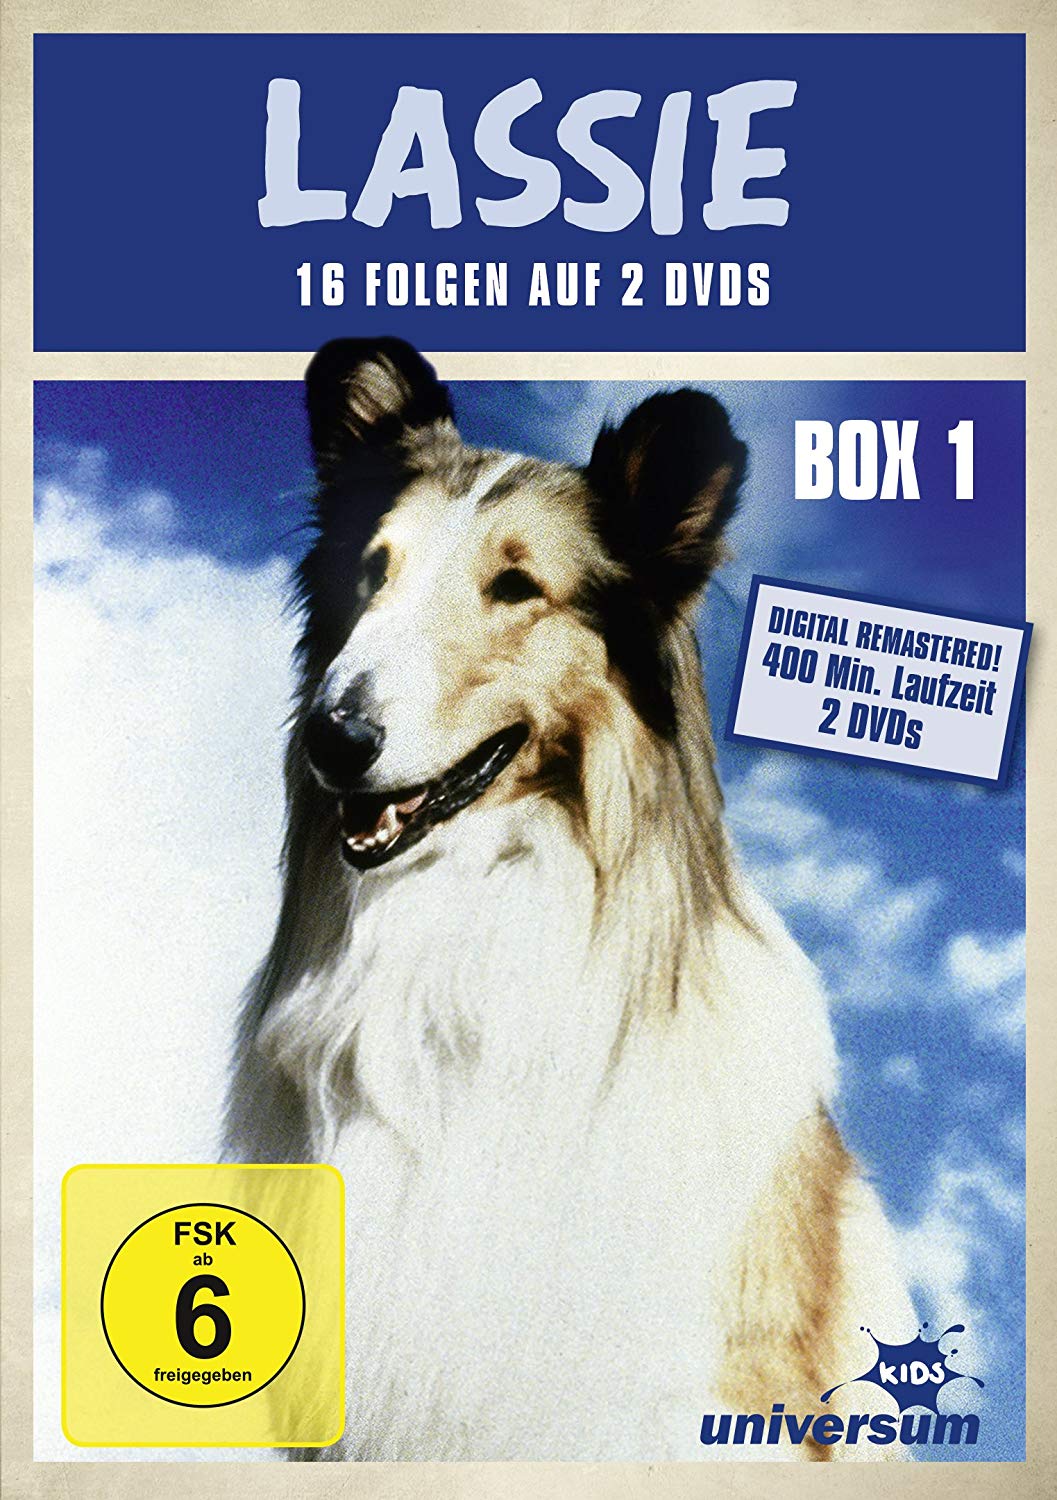 Lassie Season One Episodes 9 16 [lassie] Dvd Verleih Online Schweiz